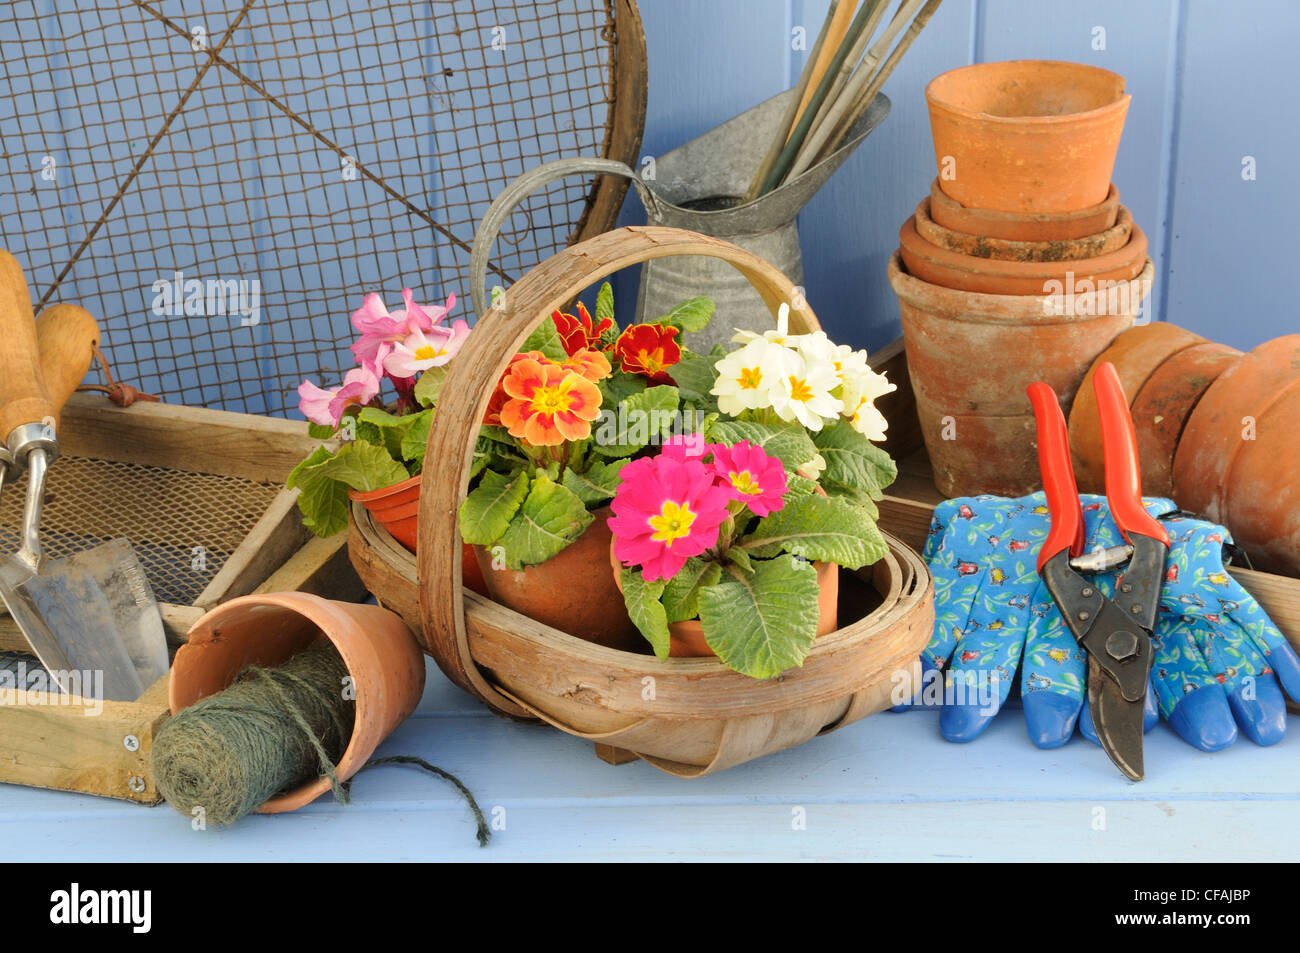 Rústico jardín primaveral escena con prímulas trug en Madera, macetas de terracota y herramientas de jardinería. Foto de stock